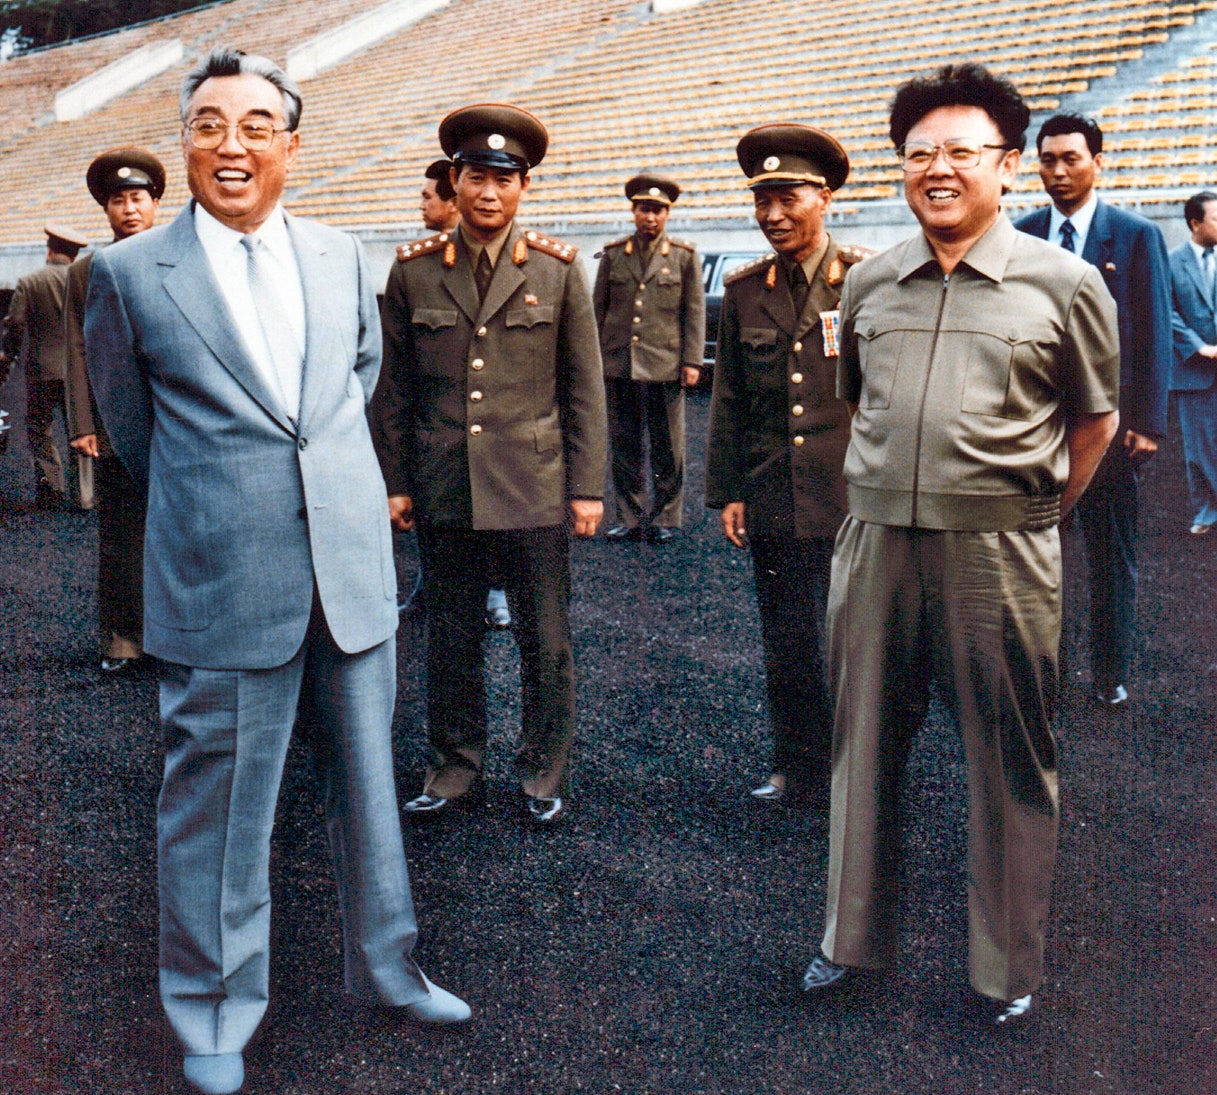 بریگاد شادی مسئول رفع نیازهای جنسی رهبران کره شمالی